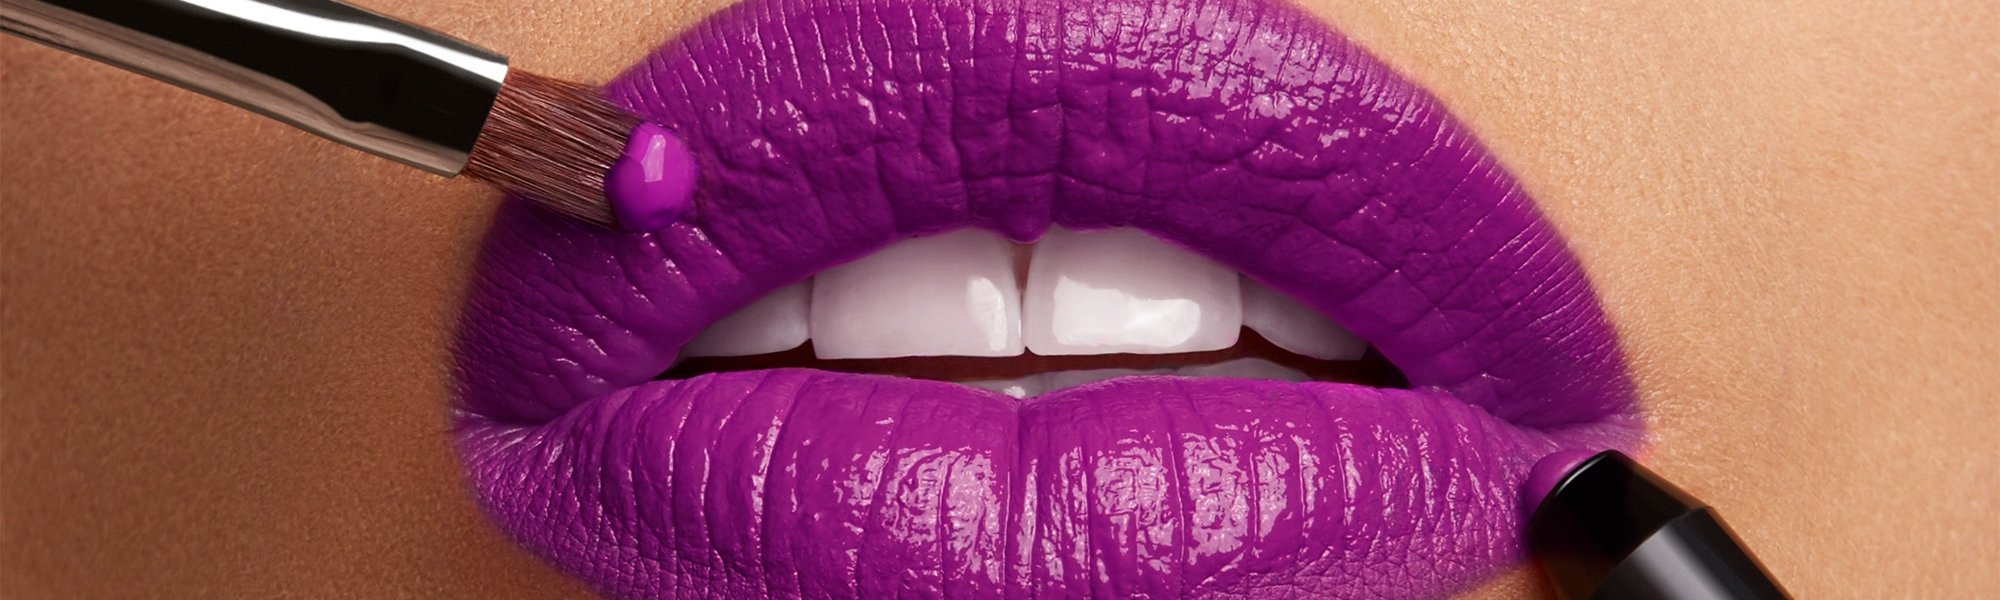 Volle Lippen werden mit Stift und Pinsel violett geschminkt